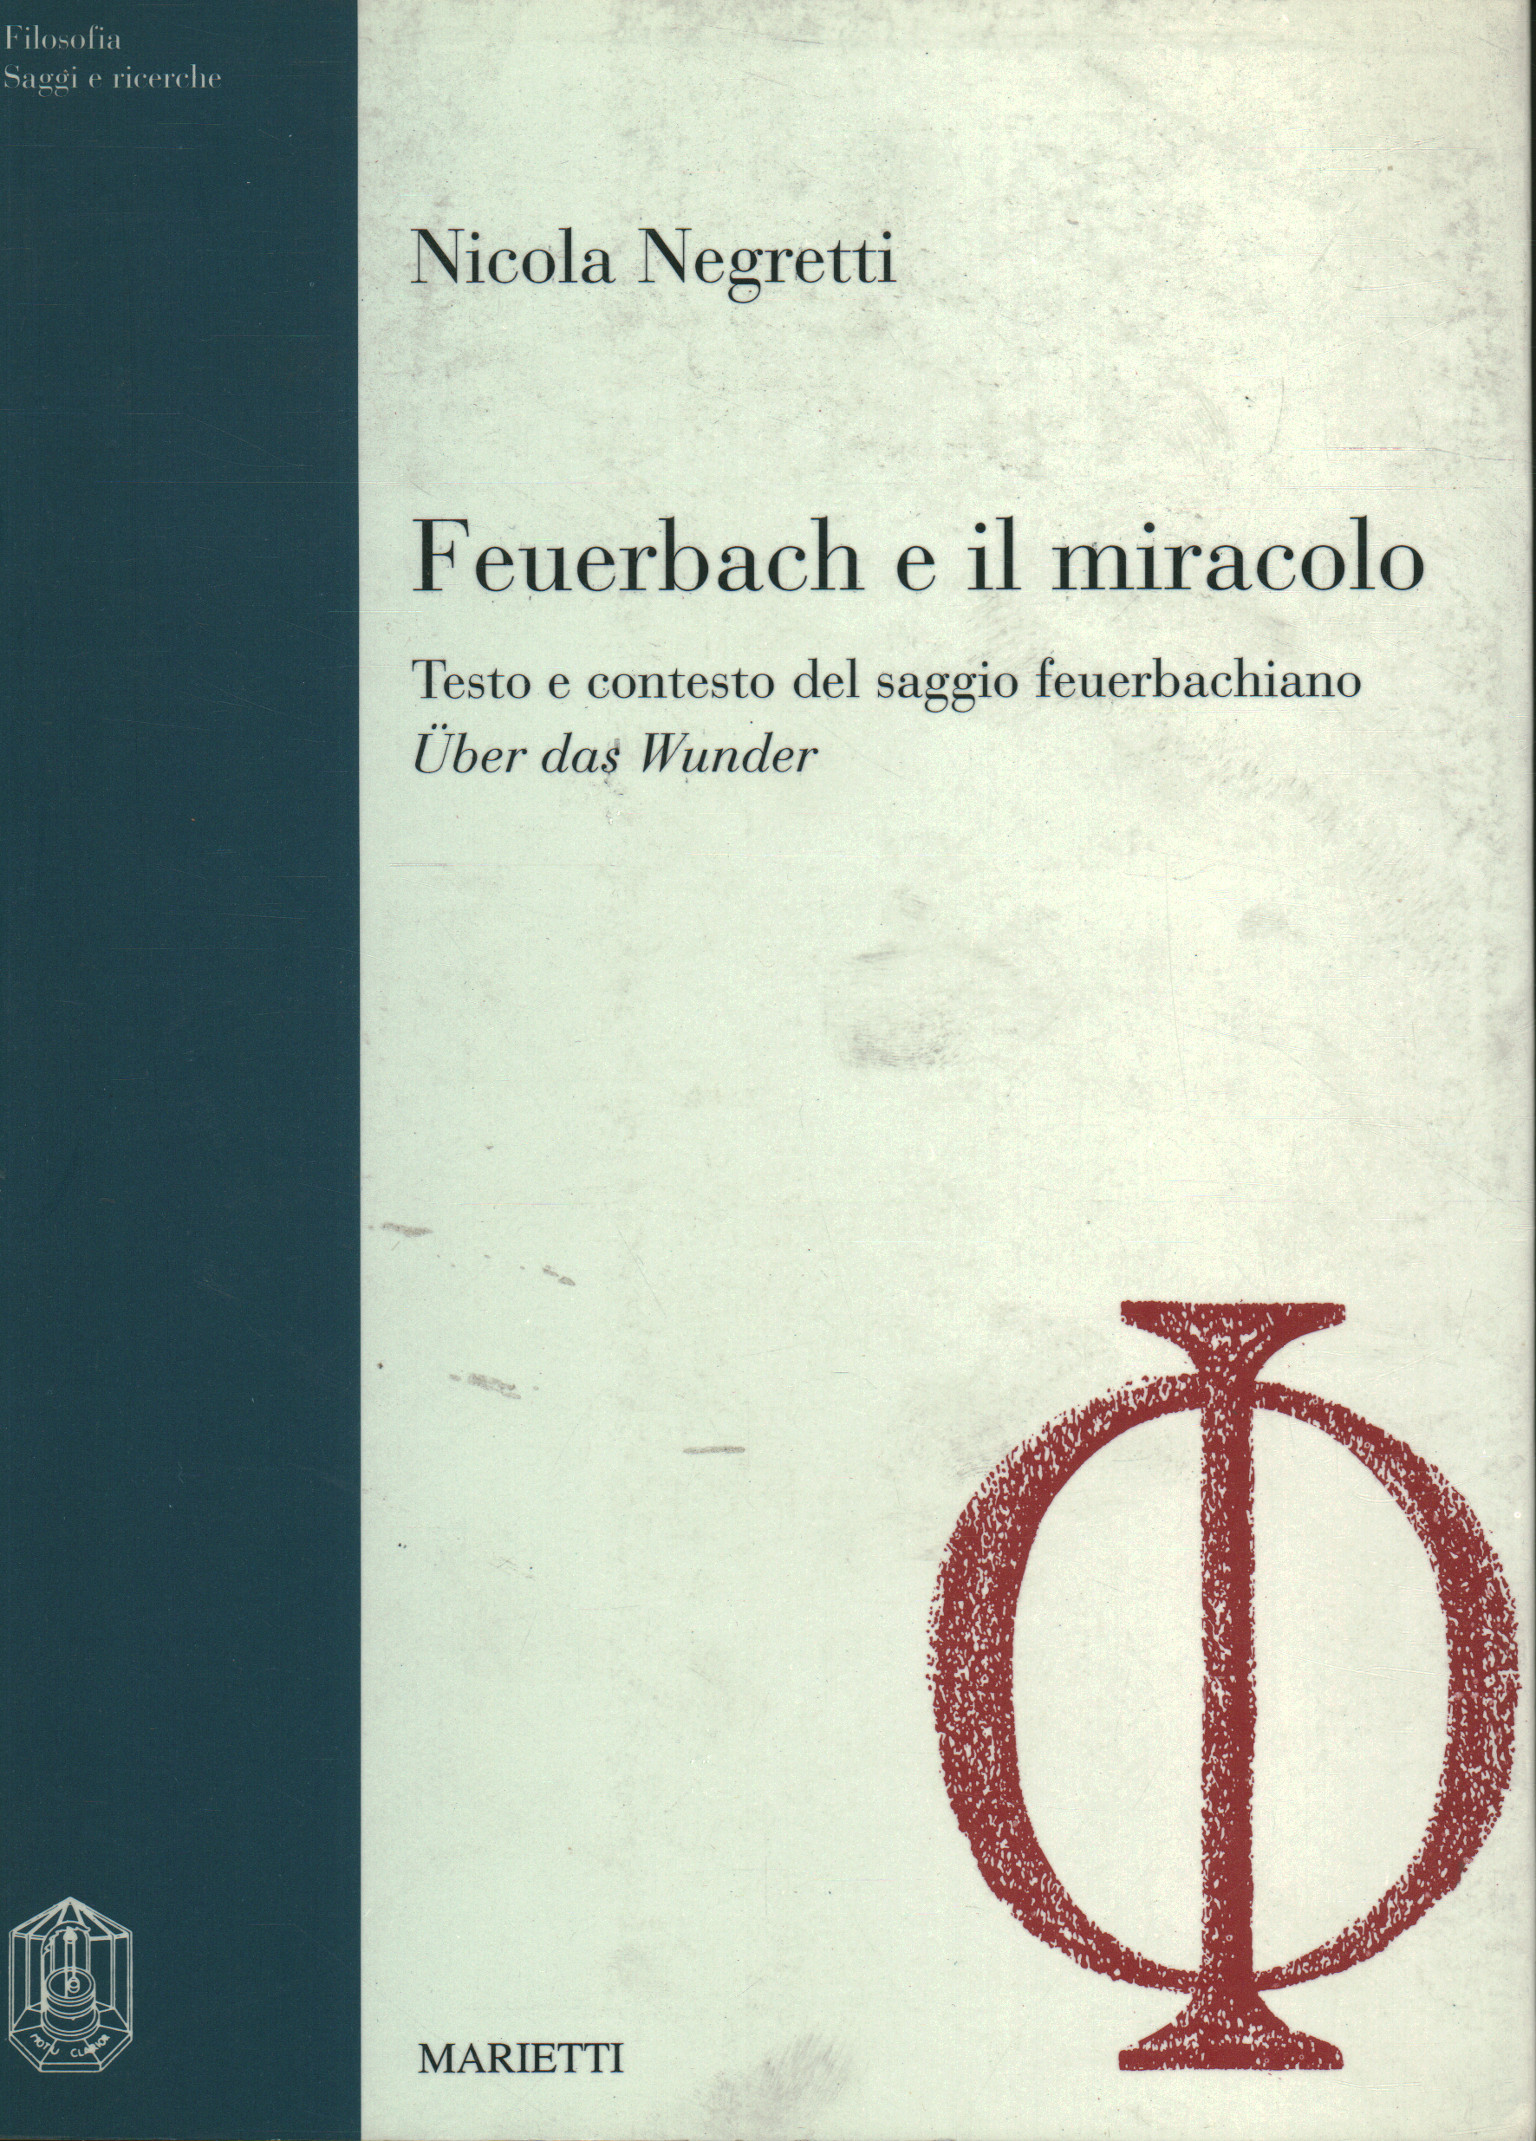 Feuerbach y el milagro, Nicola Negretti